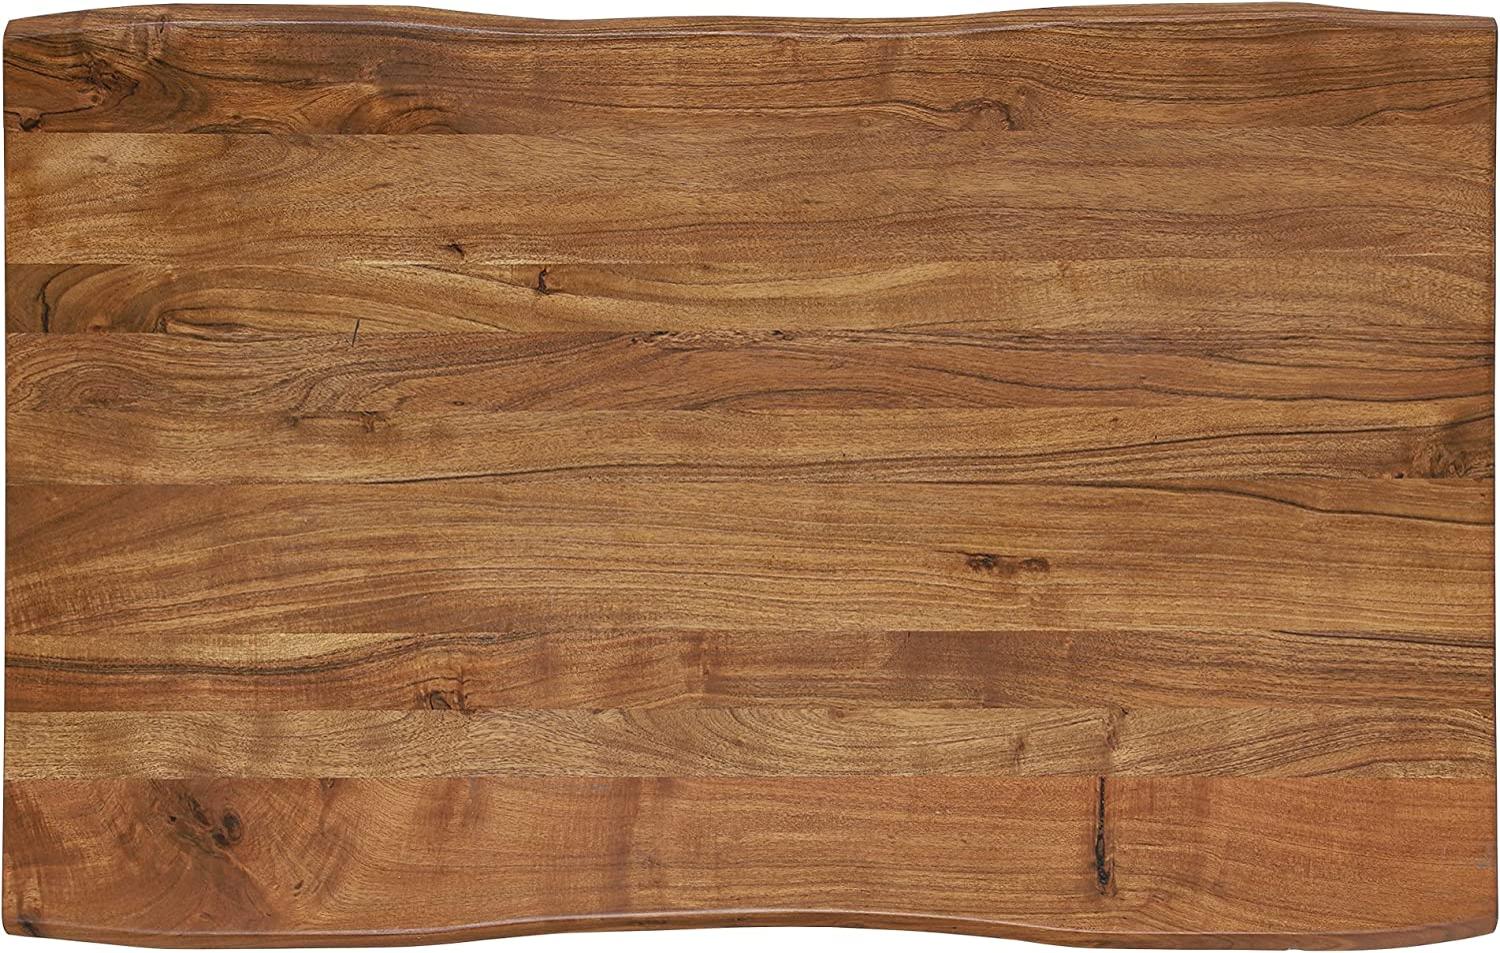 WOMO-DESIGN Baumkantentisch 110x70 cm, Unikat, handgefertigt aus Massivholz Akazienholz mit X-Füße Metallgestell Stahl Schwarz, Couchtisch Wohnzimmertisch Beistelltisch Sofatisch Holztisch Kaffeetisch Bild 1